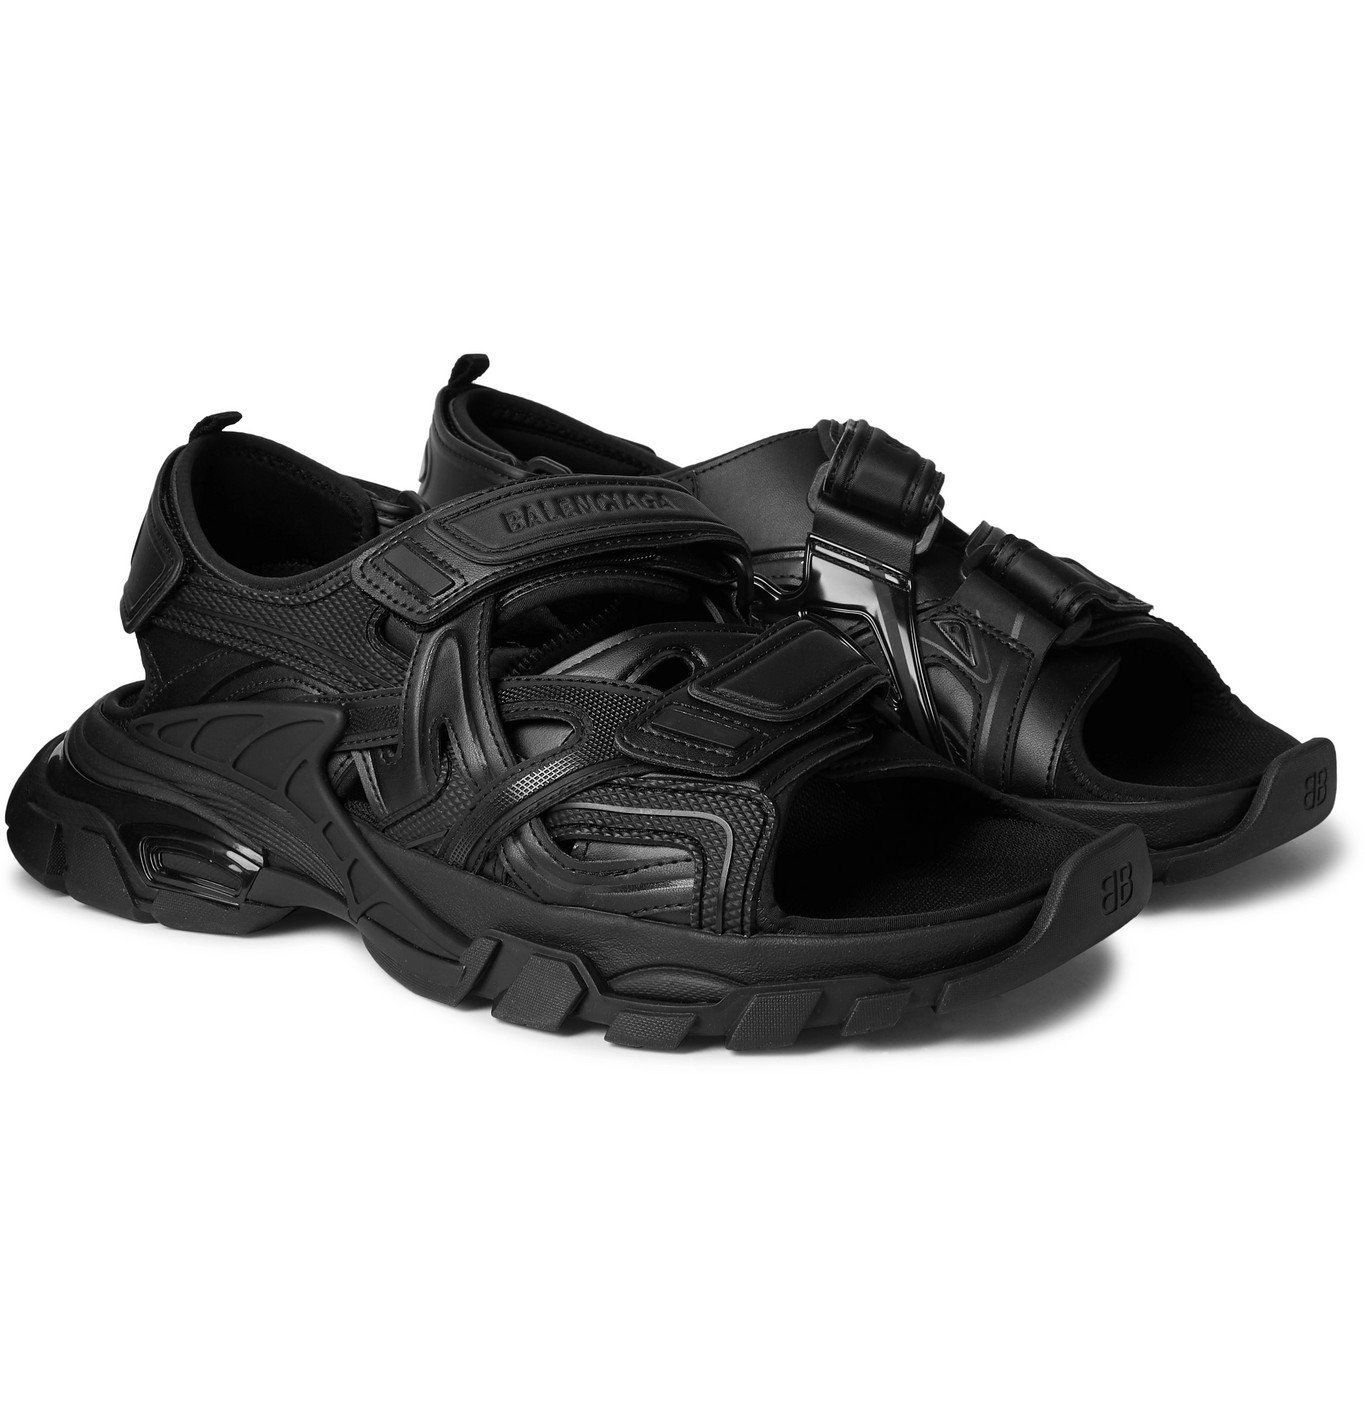 BALENCIAGA - Track Neoprene and Rubber Sandals - Black Balenciaga